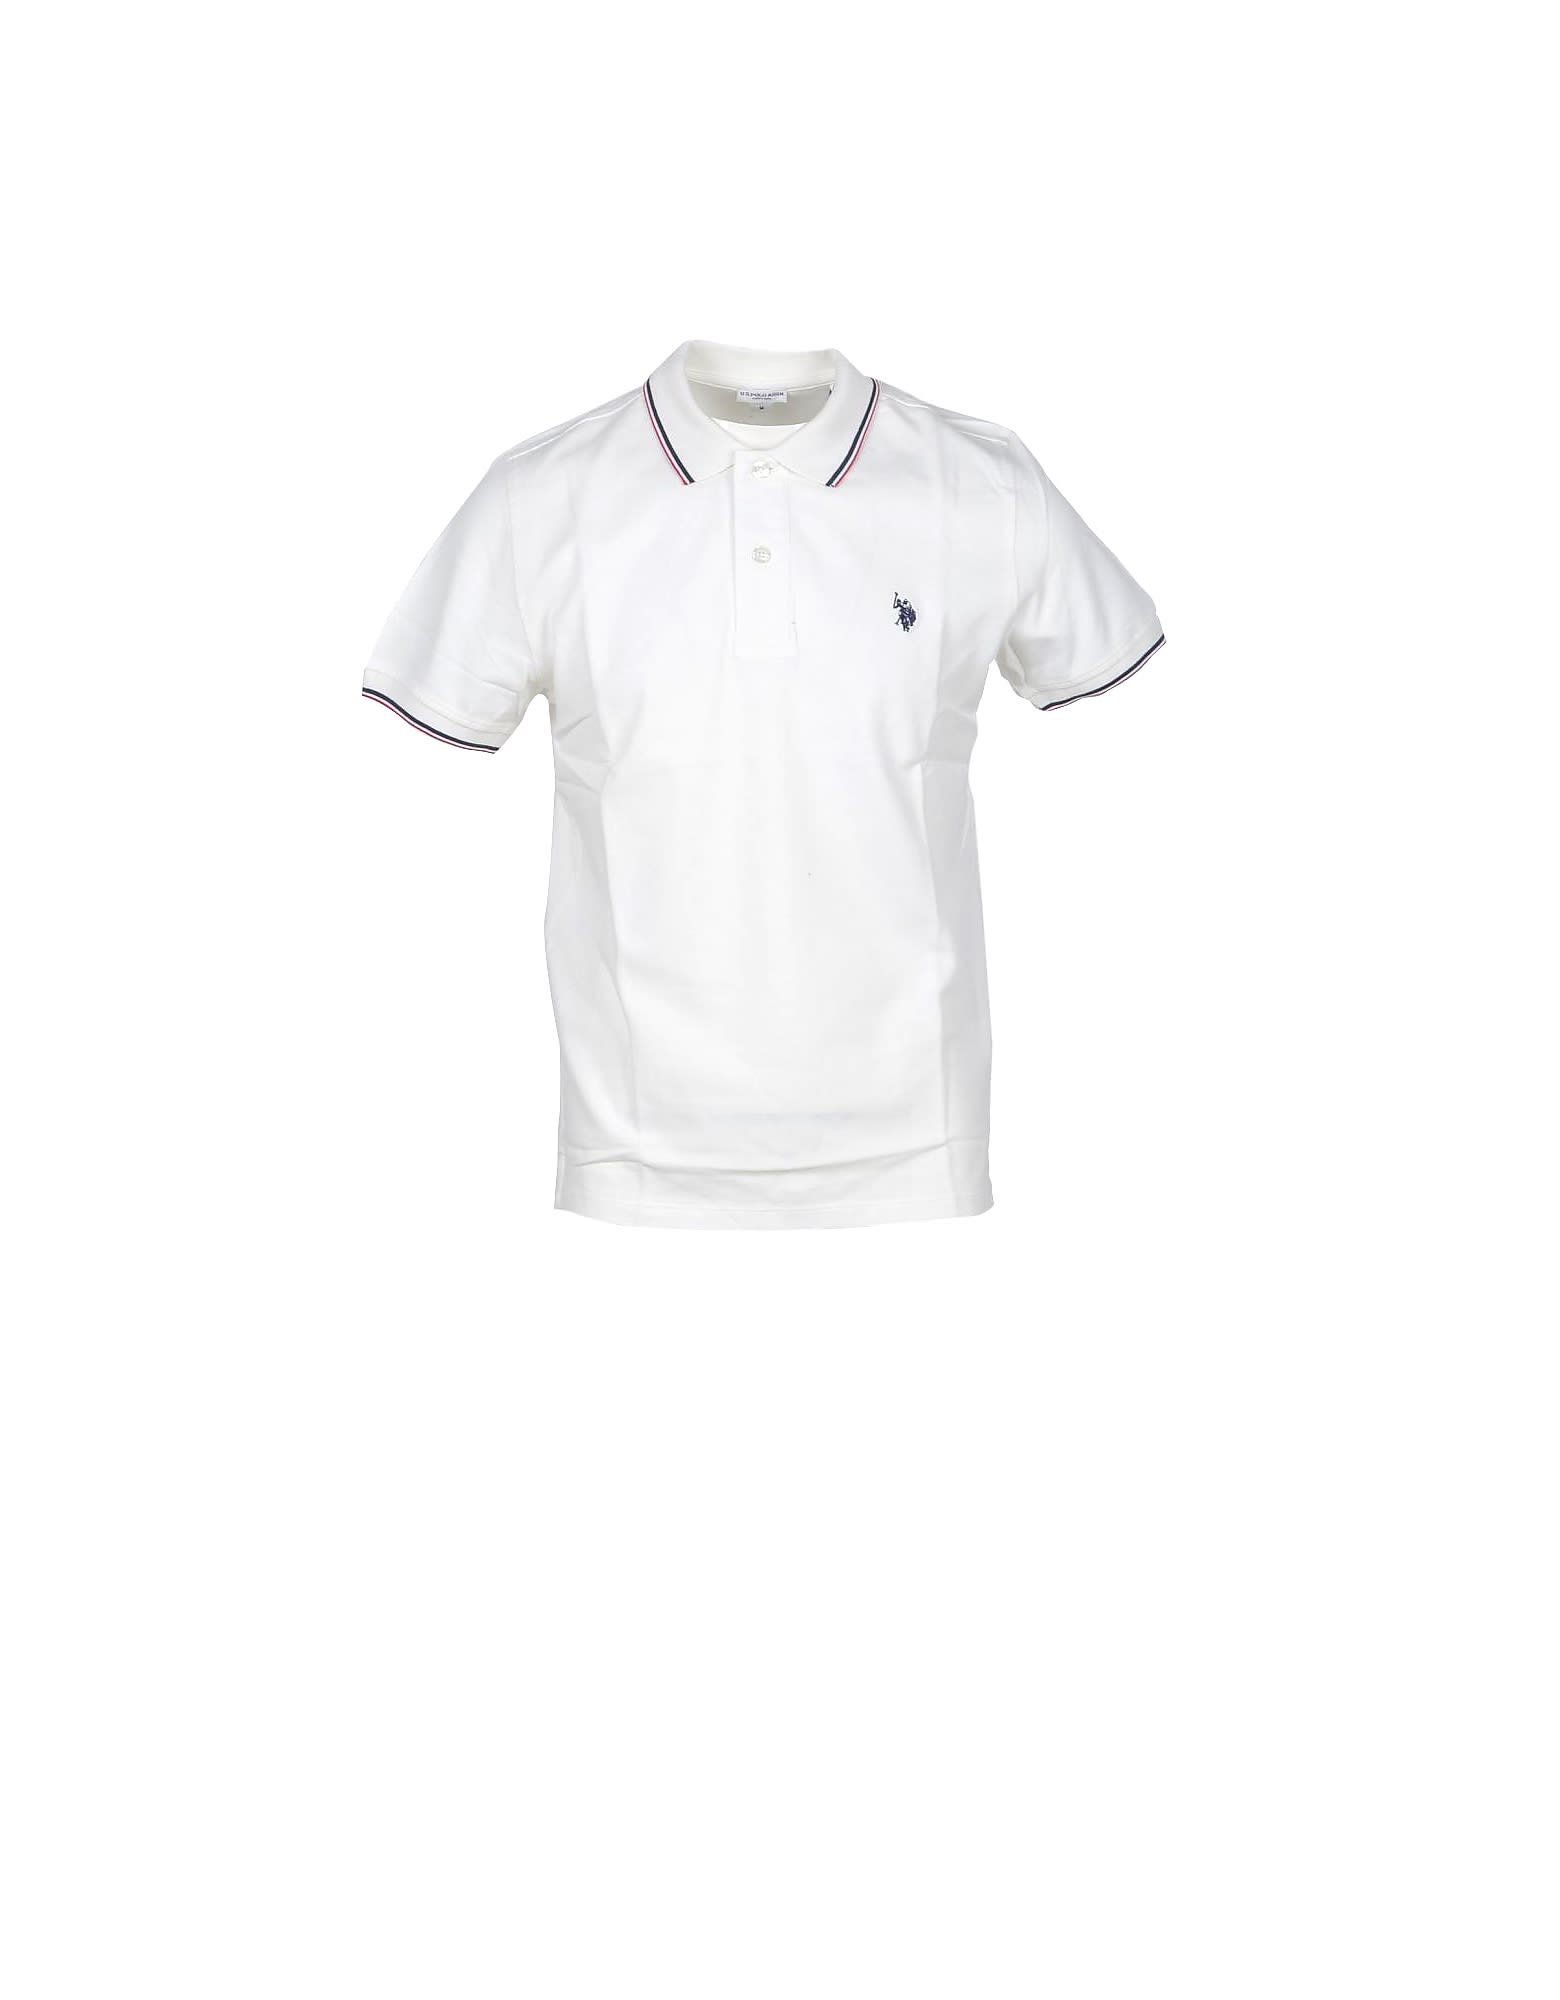 U.s. Polo Assn. White Piqué Cotton Mens Polo Shirt